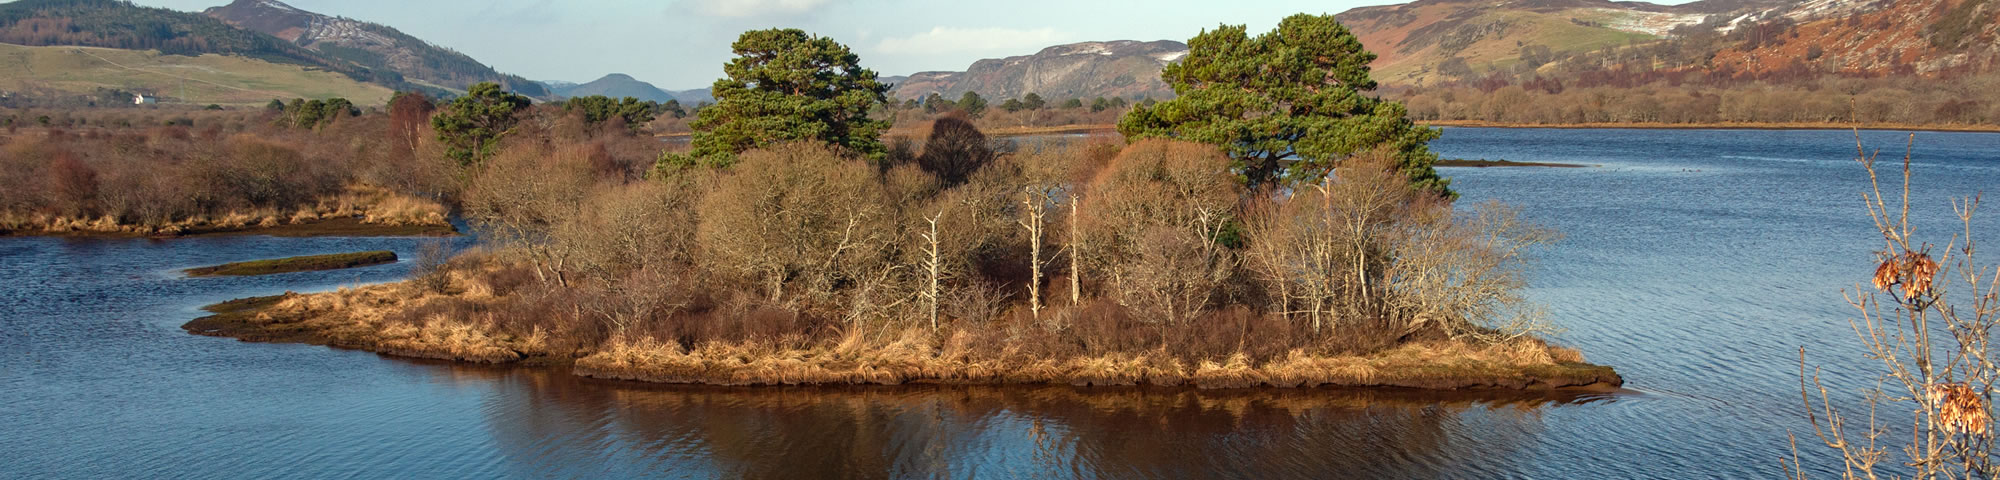 Loch Fleet Nature Reserve